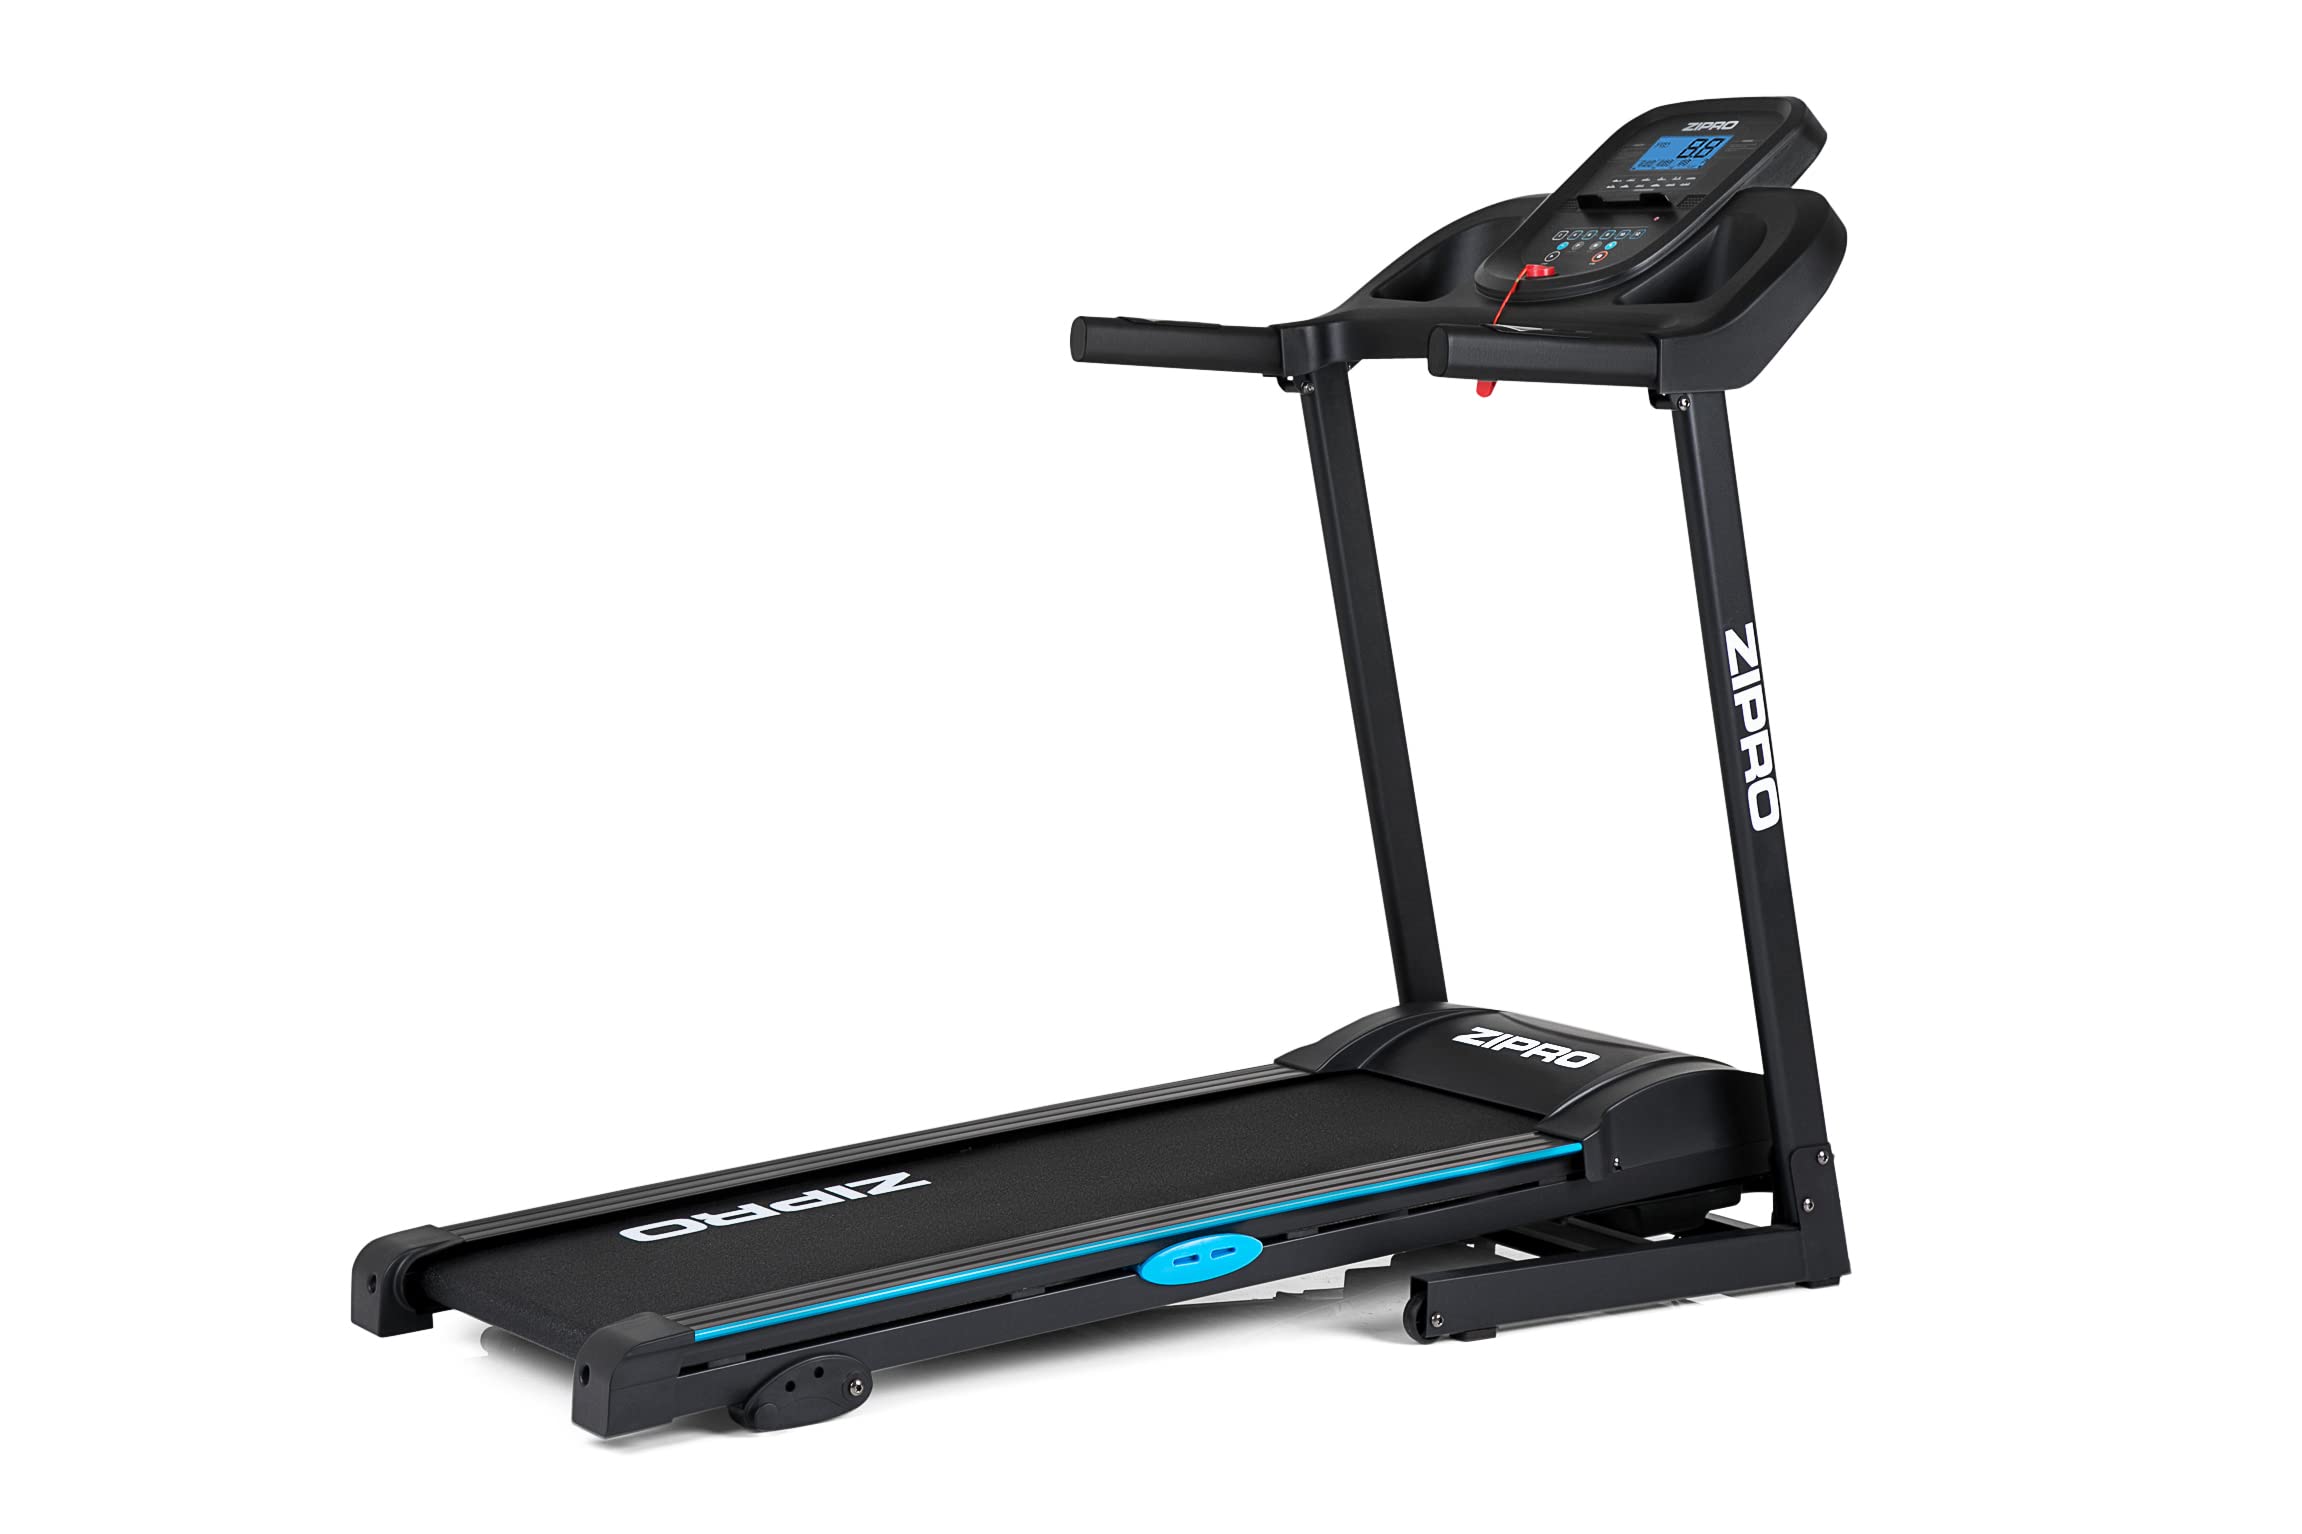 Zipro Laufband mit Steigung Tekno, Treadmill für Zuhause bis 14km/h, Walking Pad 120kg, Laufgerät 1.5-2.5 PS Motor, Steigung, LCD Display, Holder